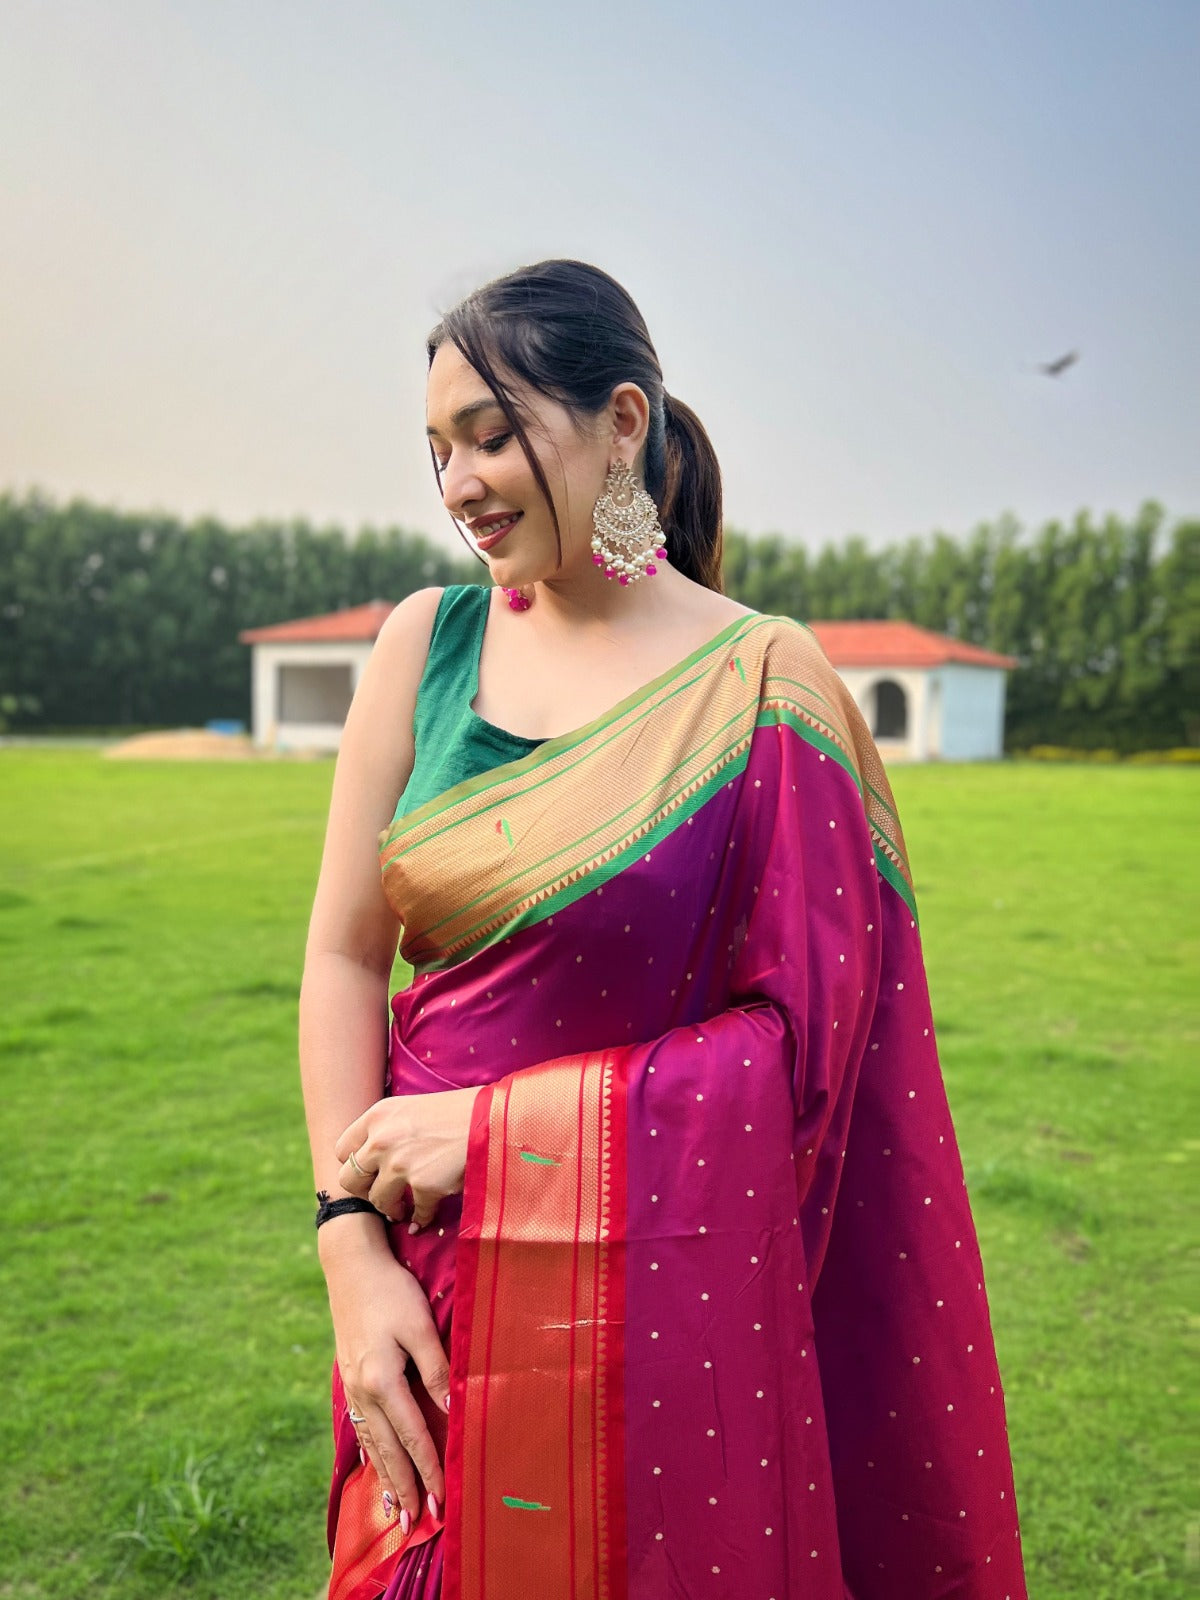 Buy Satrani Women'S Black and Golden Paithani Jacquard Silk Saree | sarees  for Women| saree | sarees Online at Best Prices in India - JioMart.